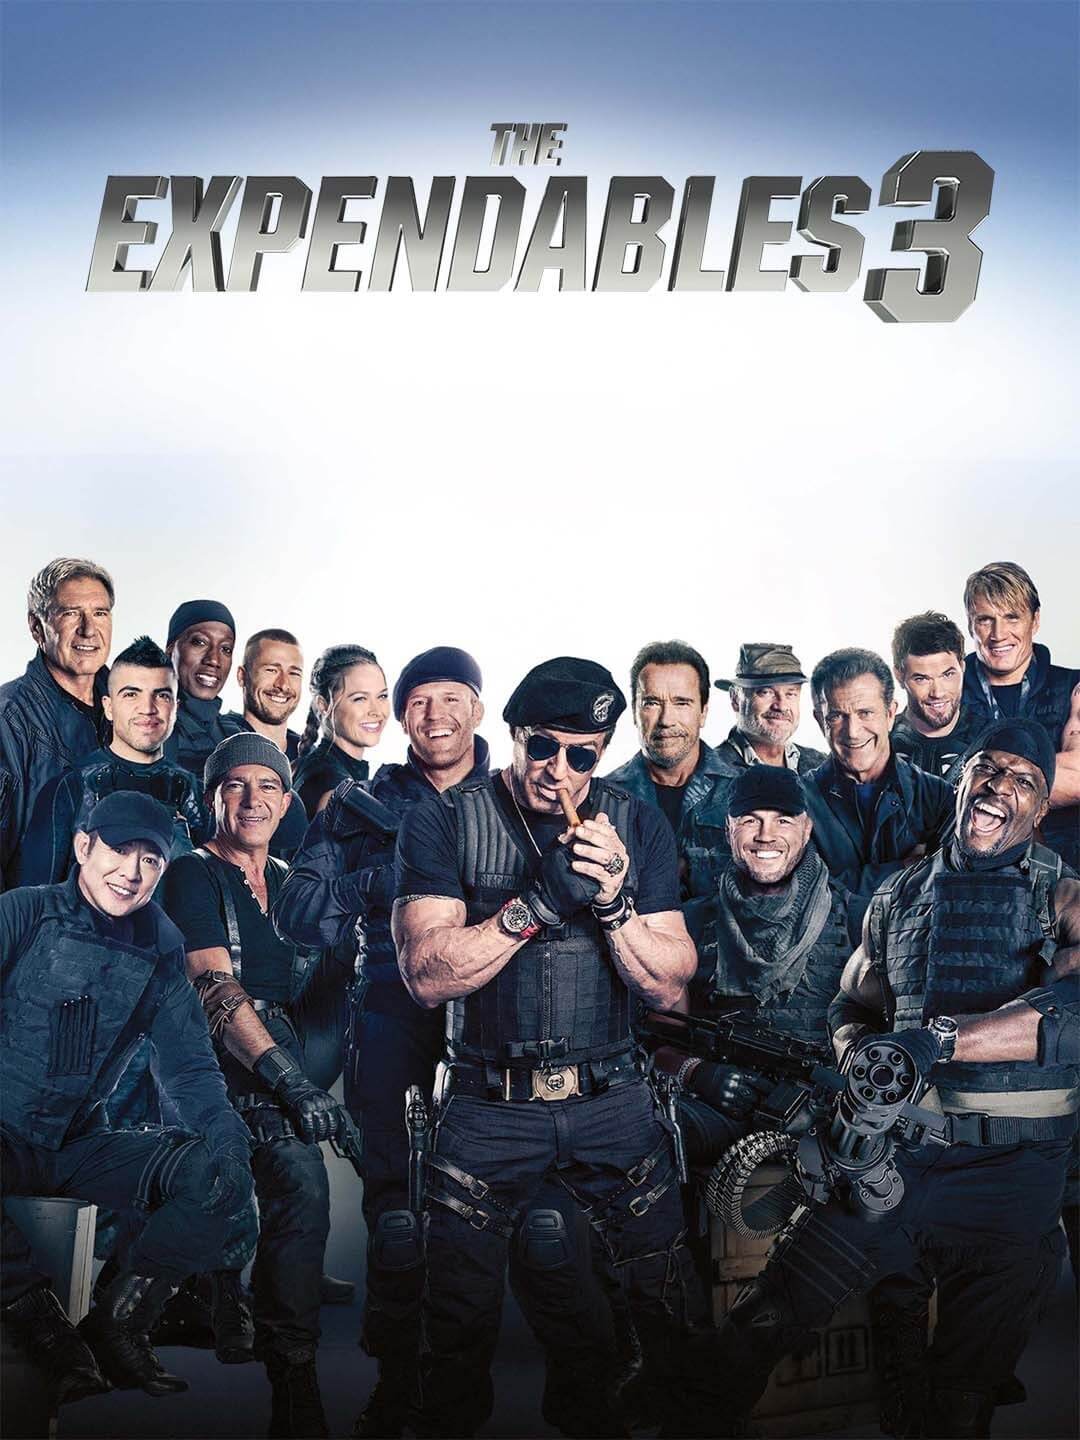 ดูหนังออนไลน์ The Expendables 3 (2014) ดิ เอ็กซ์เพ็นเดเบิลส์ โคตรคนทีมมหากาฬ 3